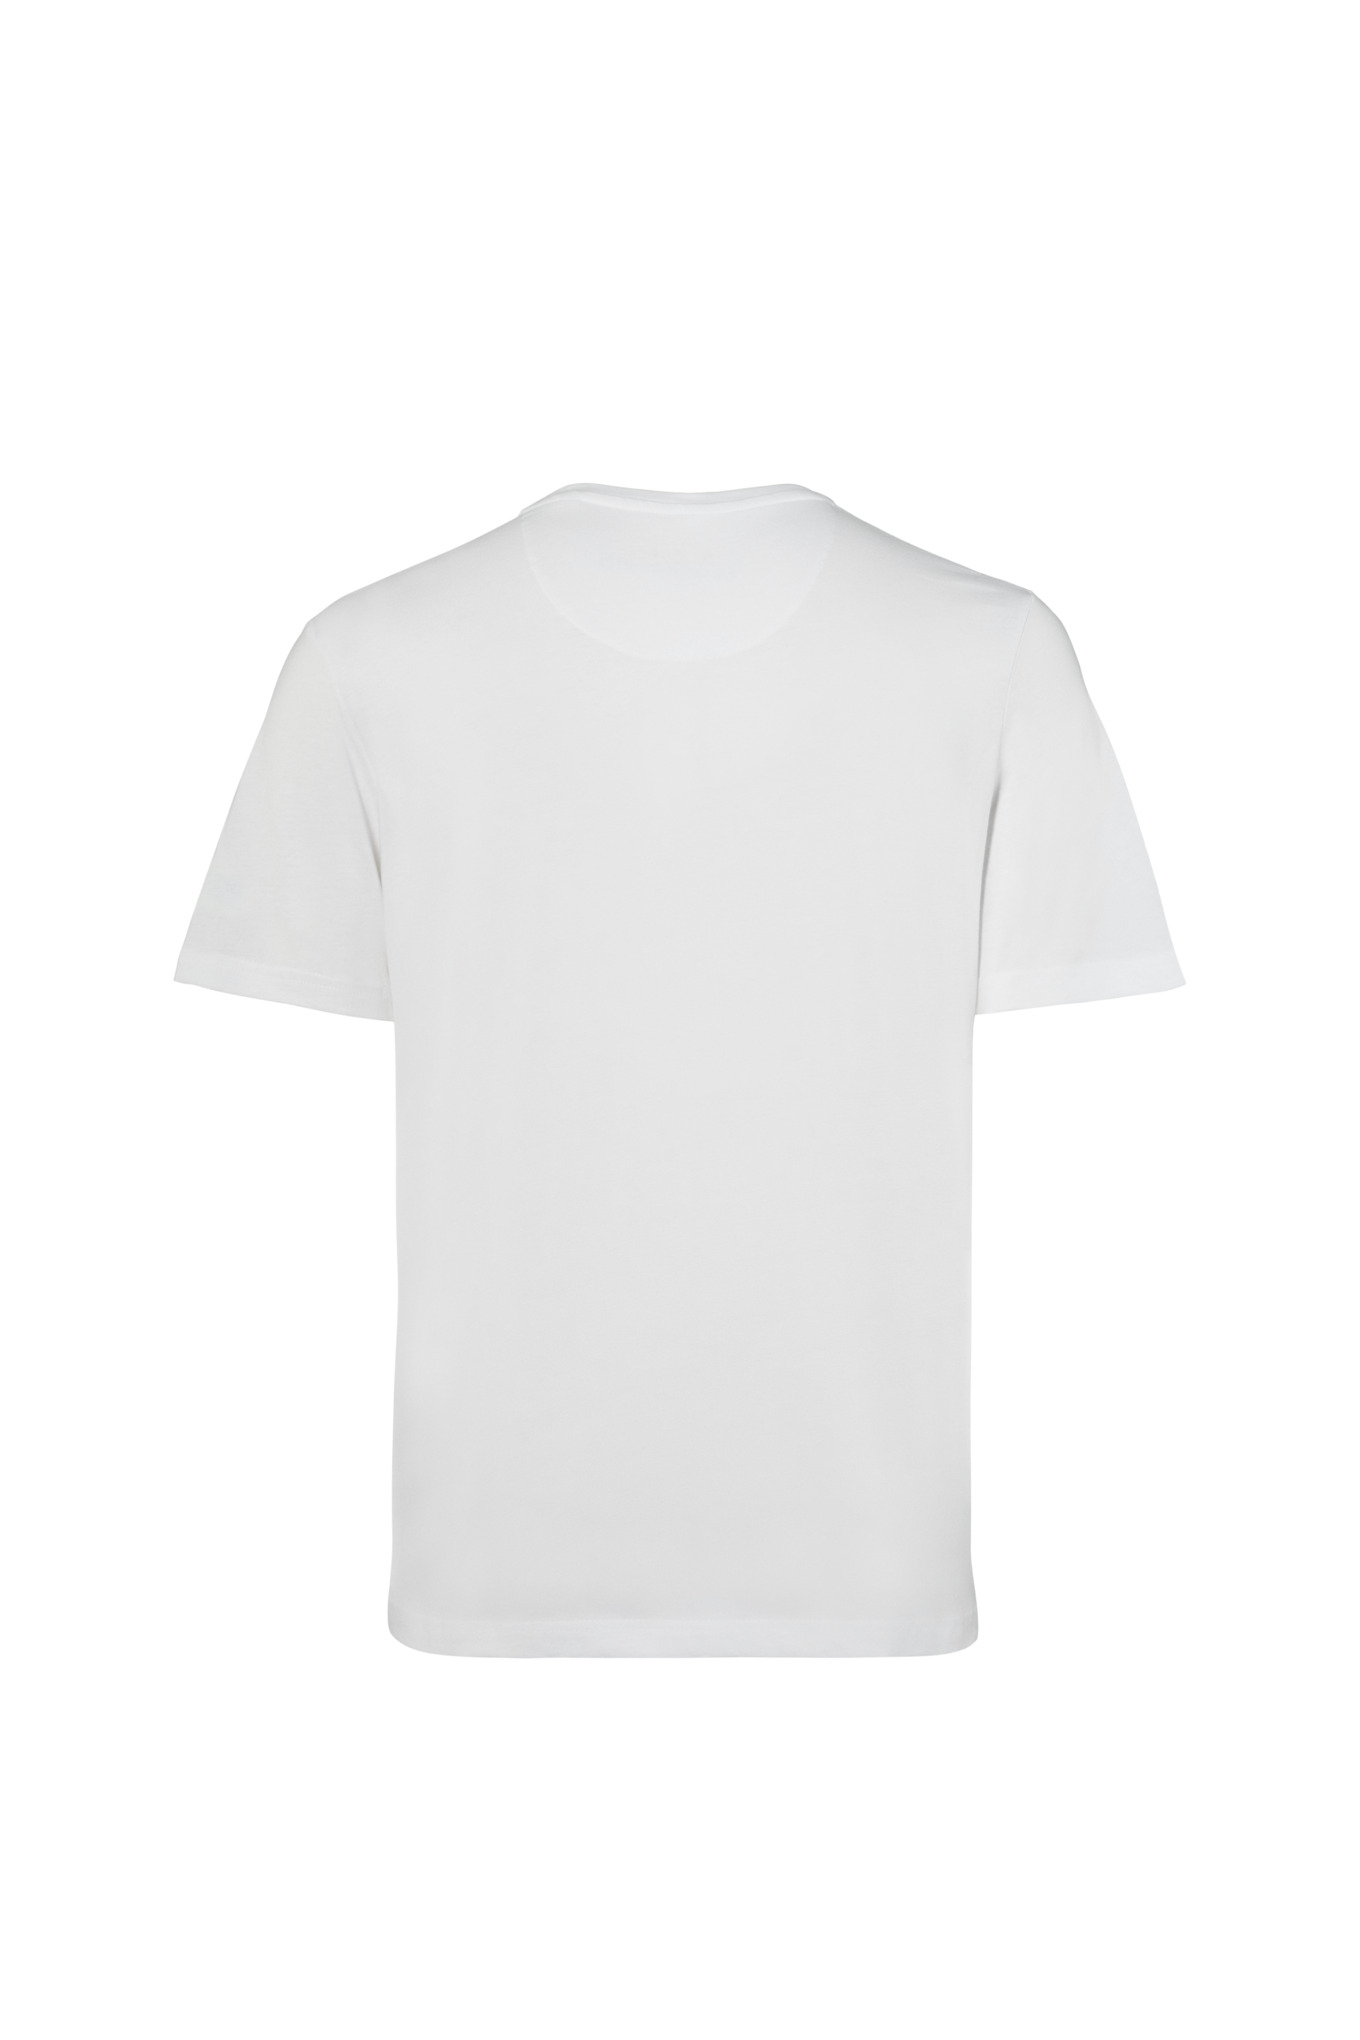 Tričko STS bílé